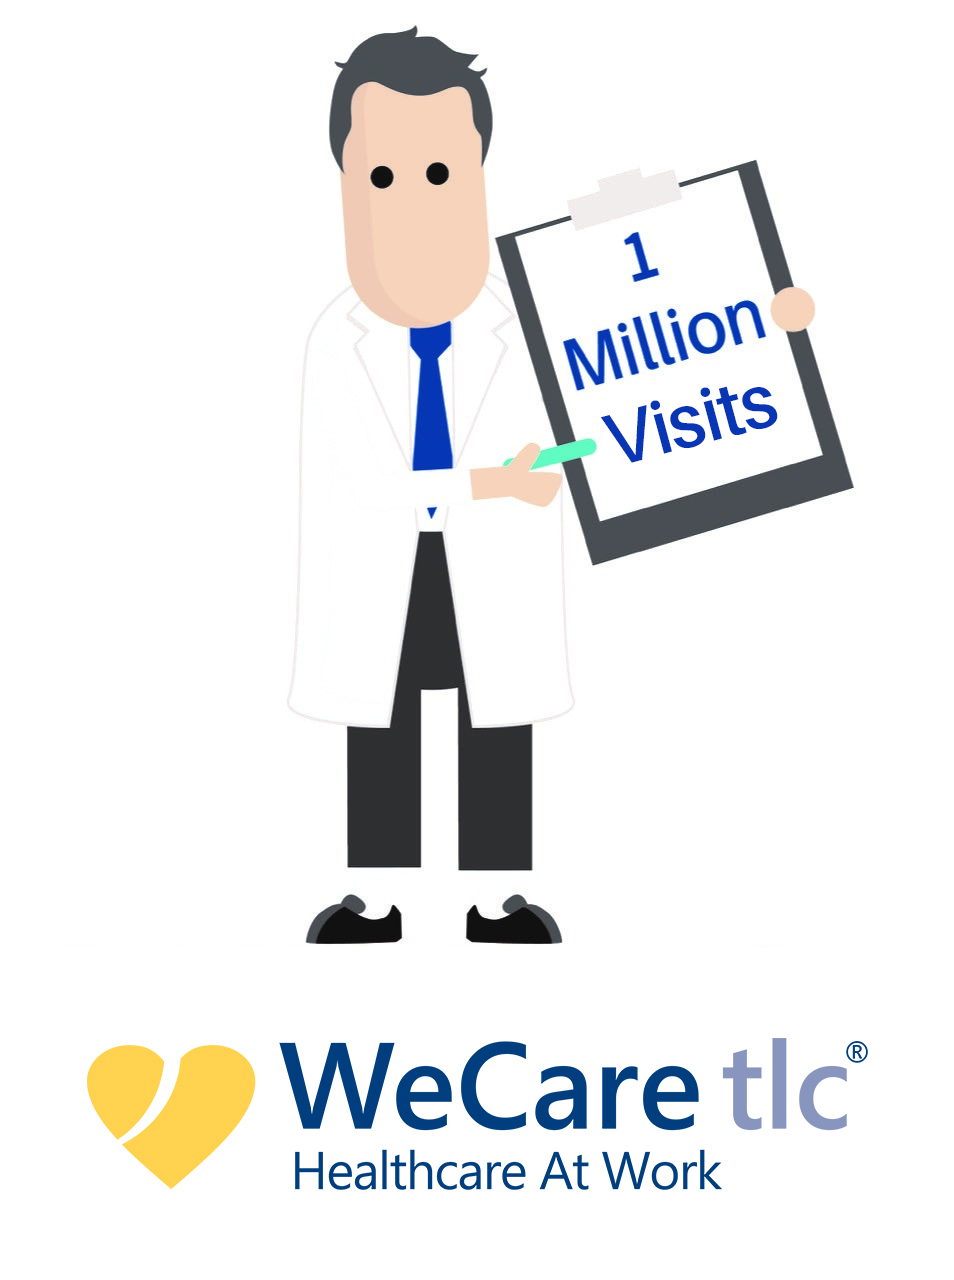 WeCare tlc 1 millionth patient visit